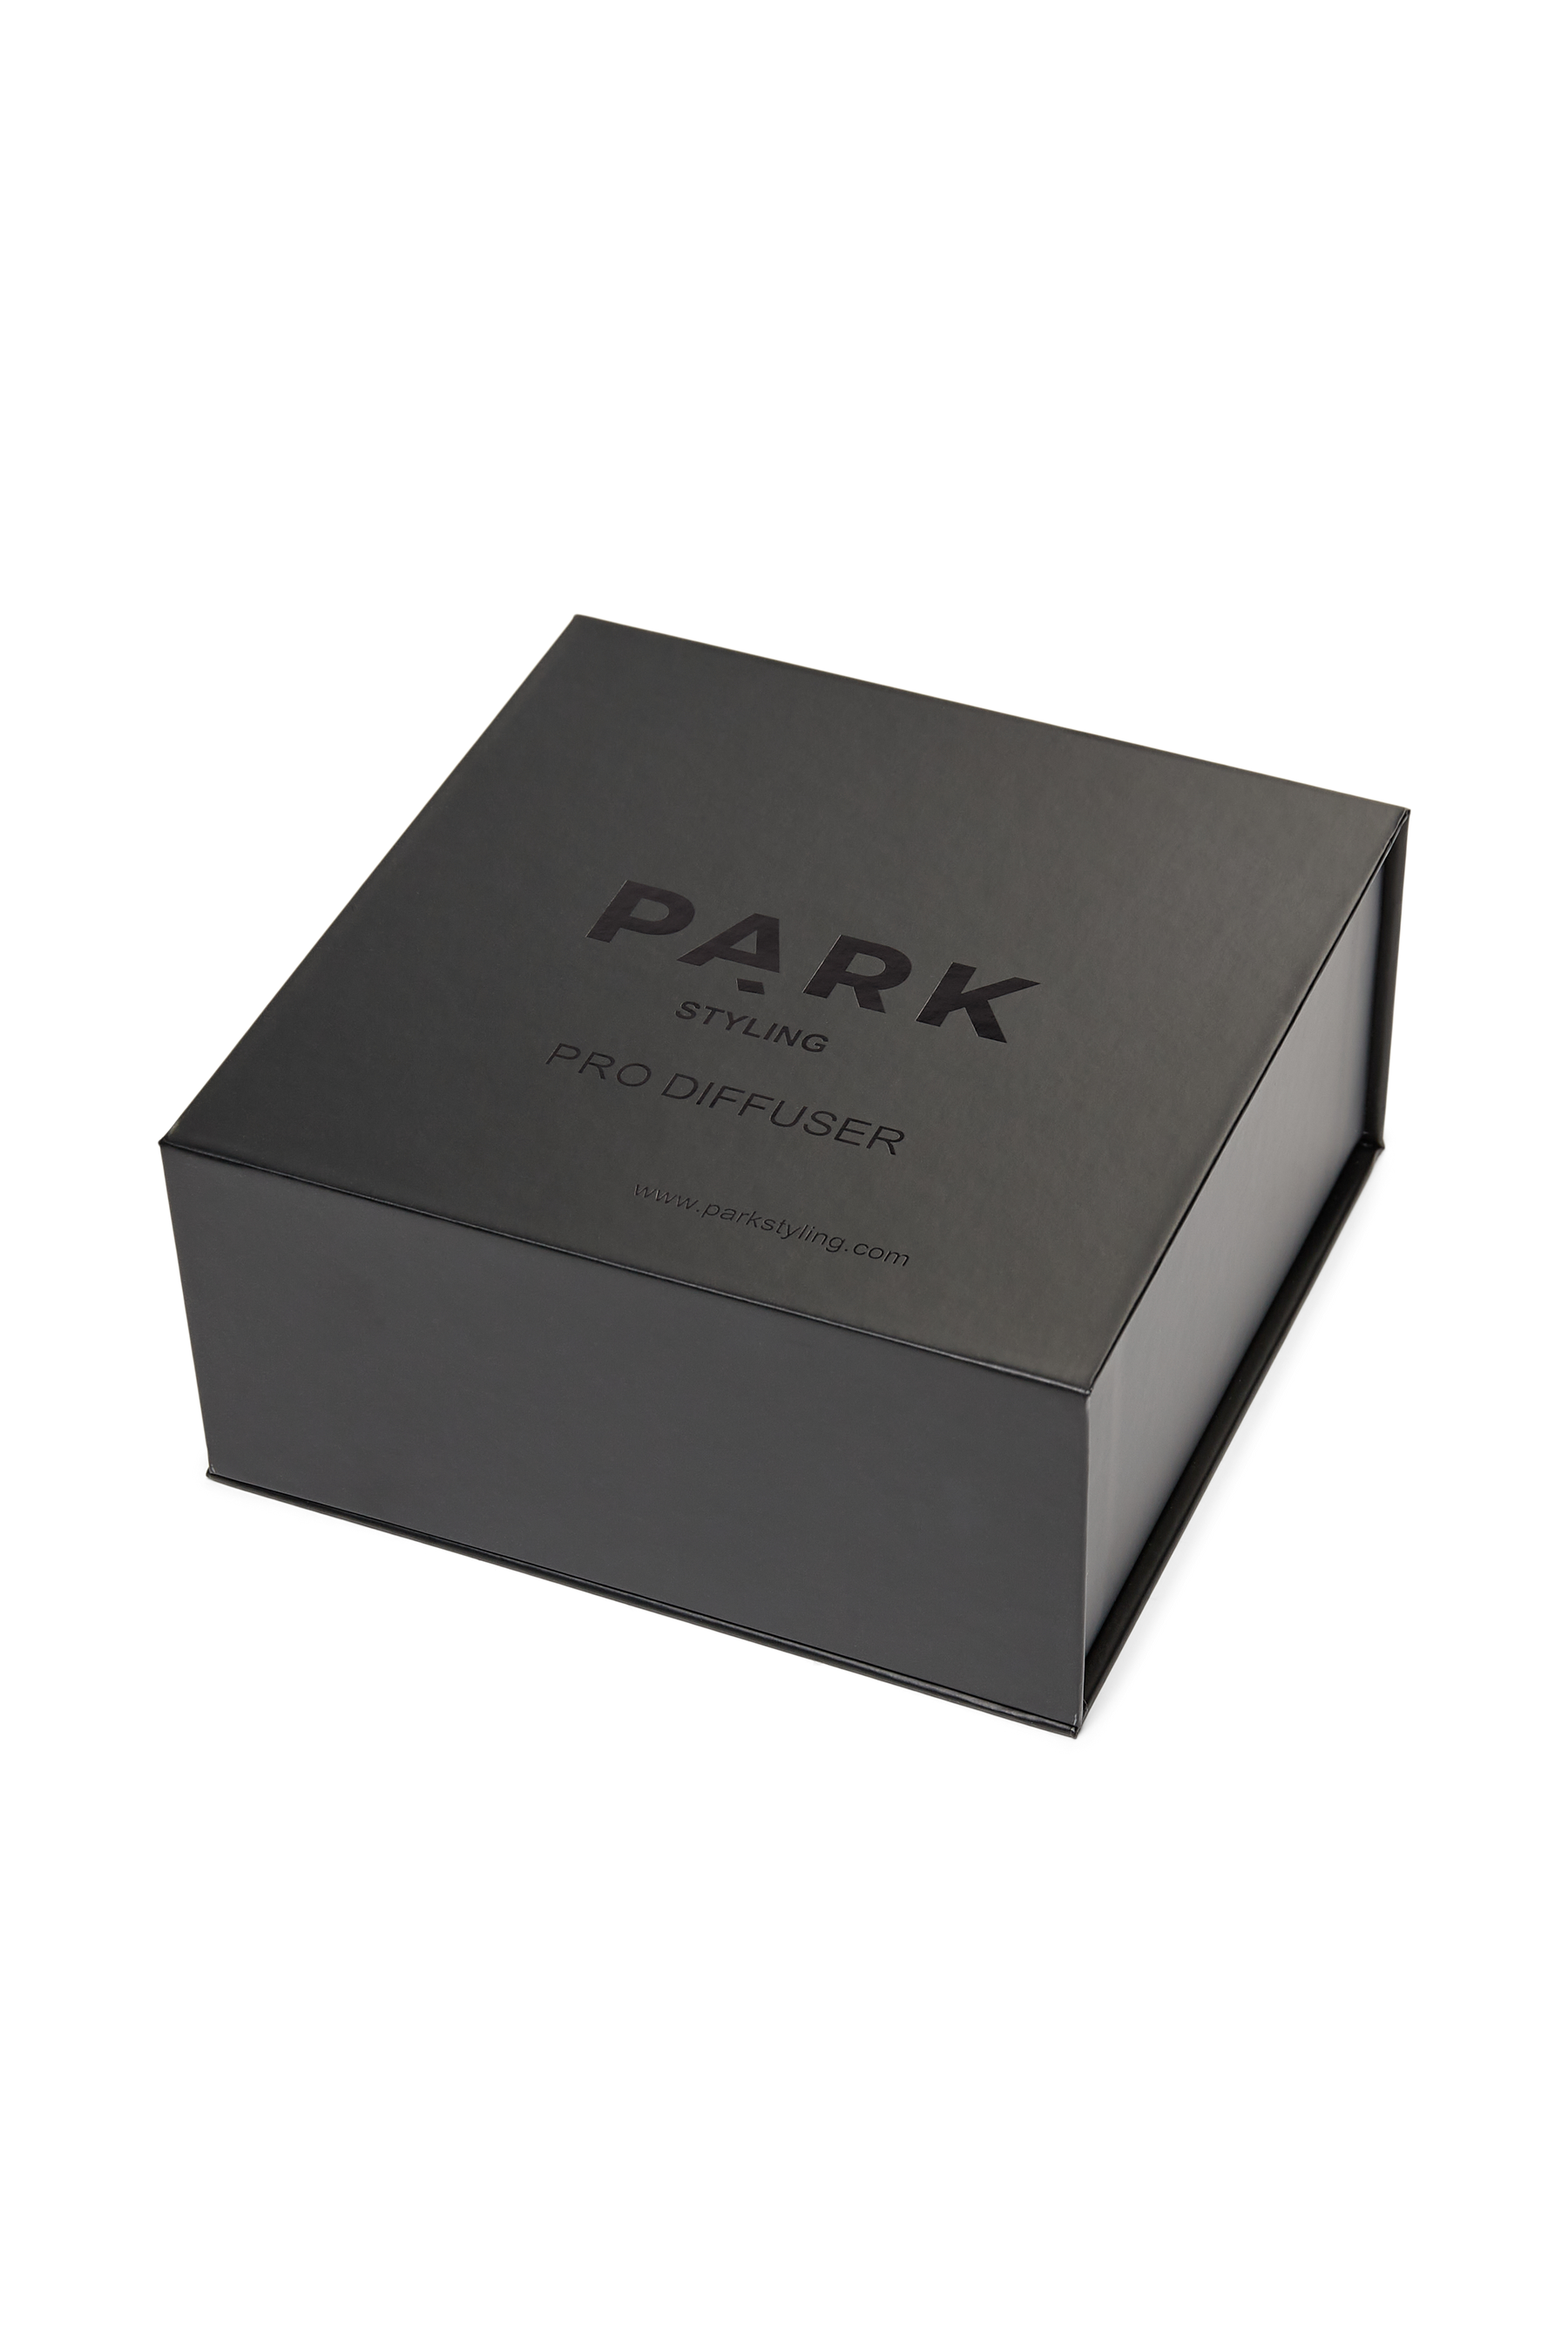 PARK Air Pro diffuser - Præcision til struktureret styling